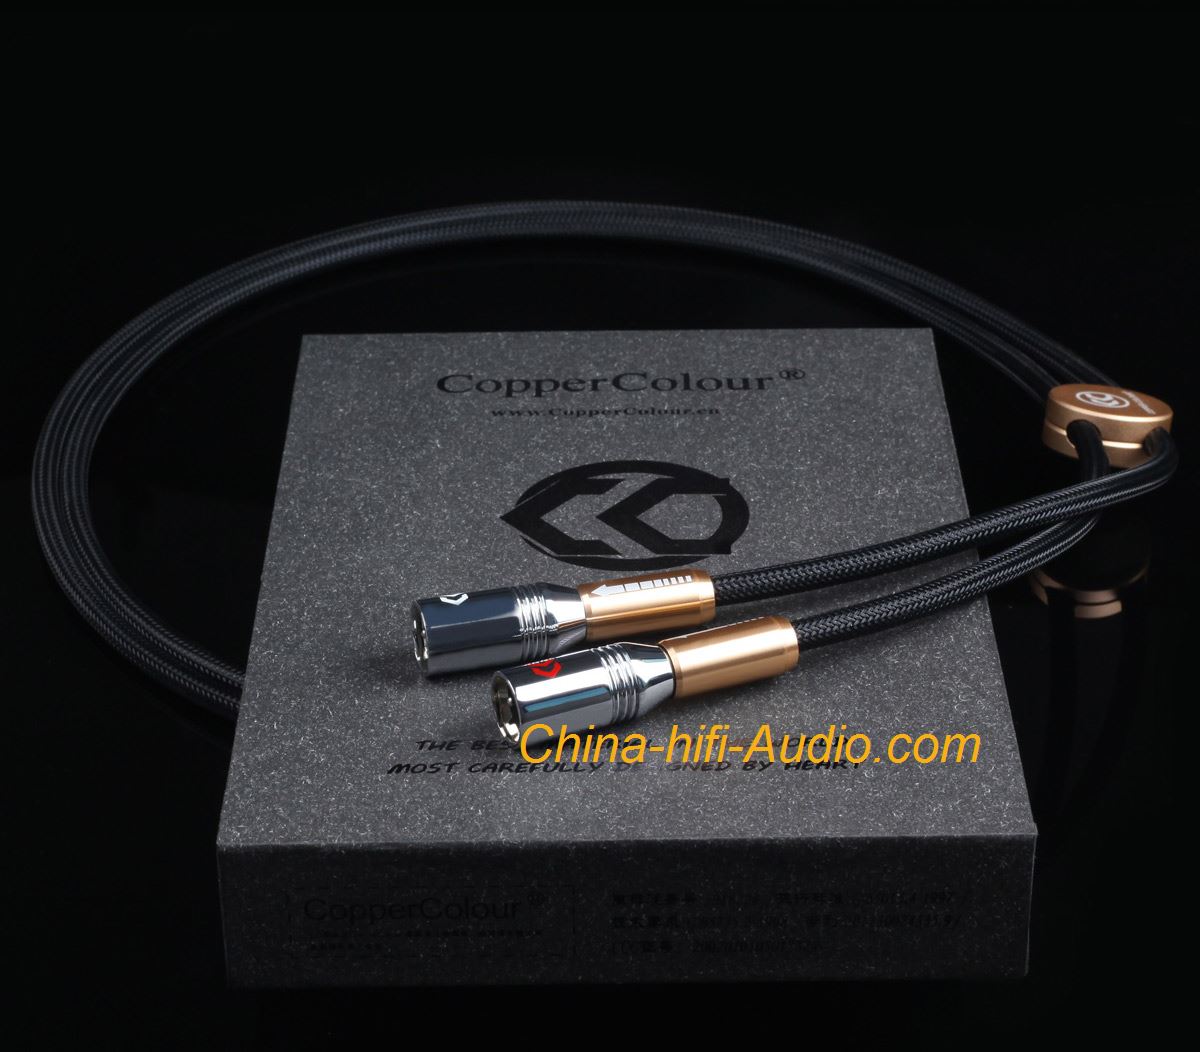 COPPER COLOUR Alpha Audiophile Cable CC XLR plug audio interconnect cord pair